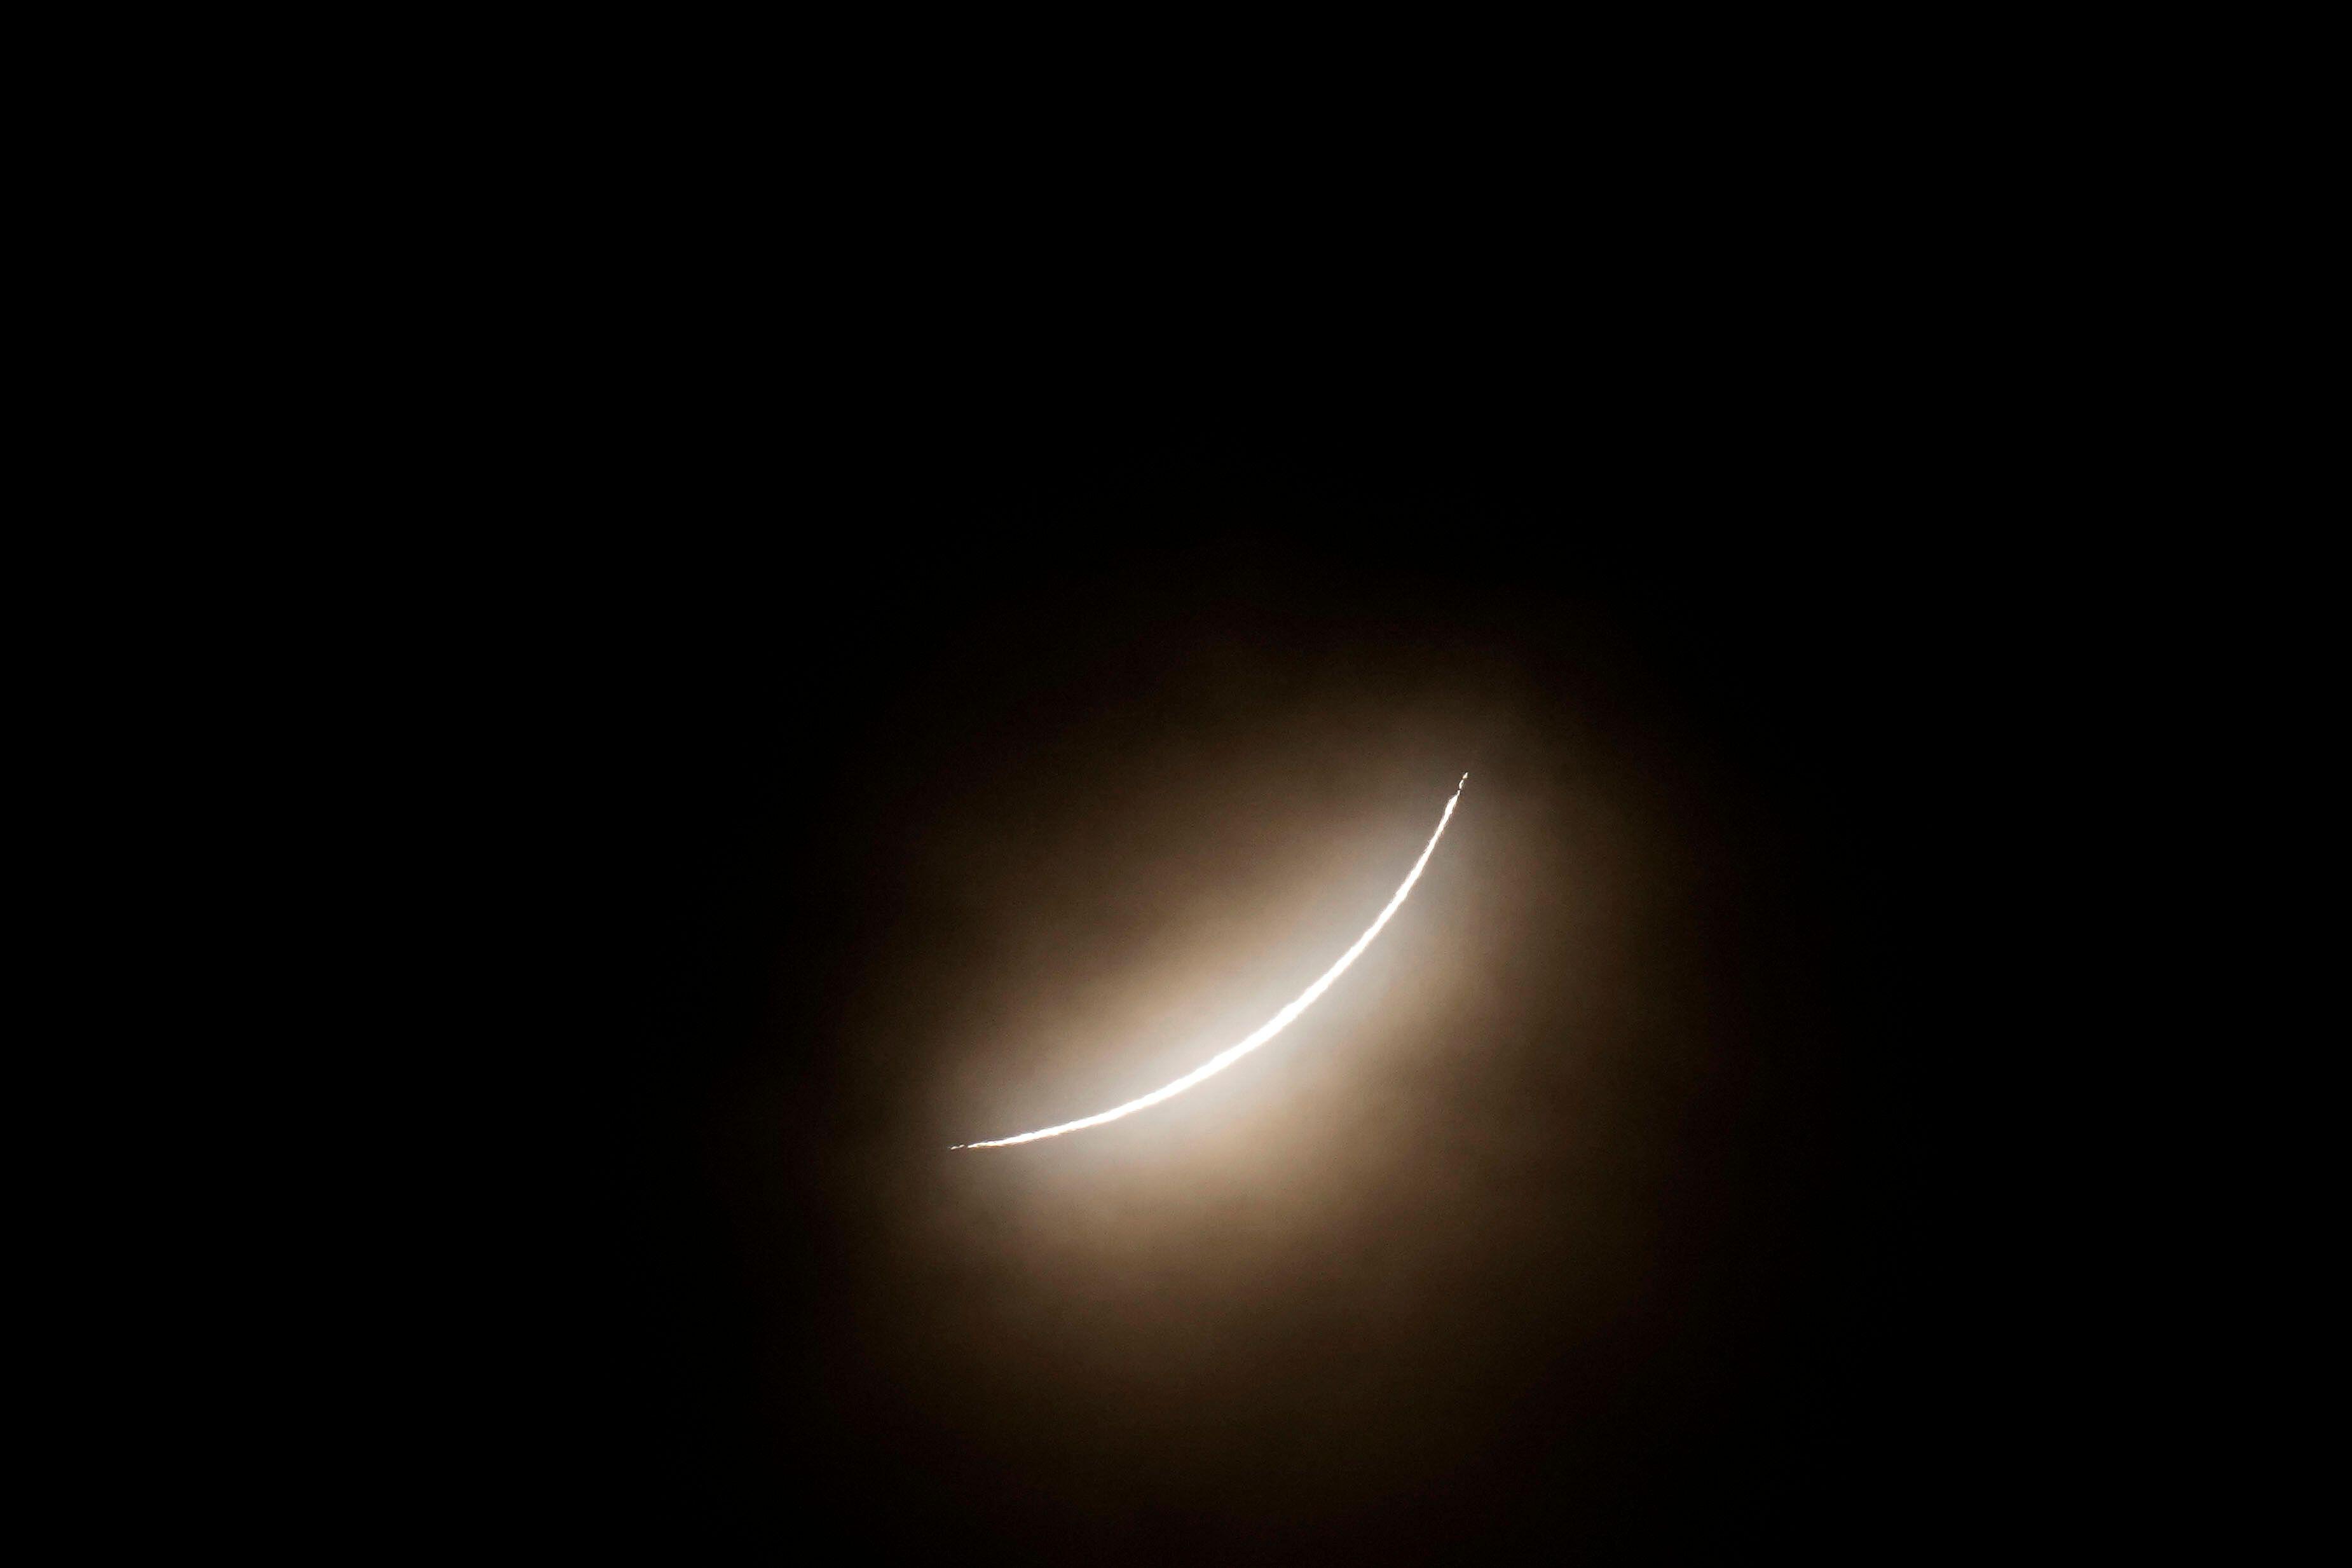 텍사스 주 이글 패스(Eagle Pass)에서 볼 수 있듯이, 개기 일식이 진행되는 동안 달은 태양을 부분적으로 가립니다.